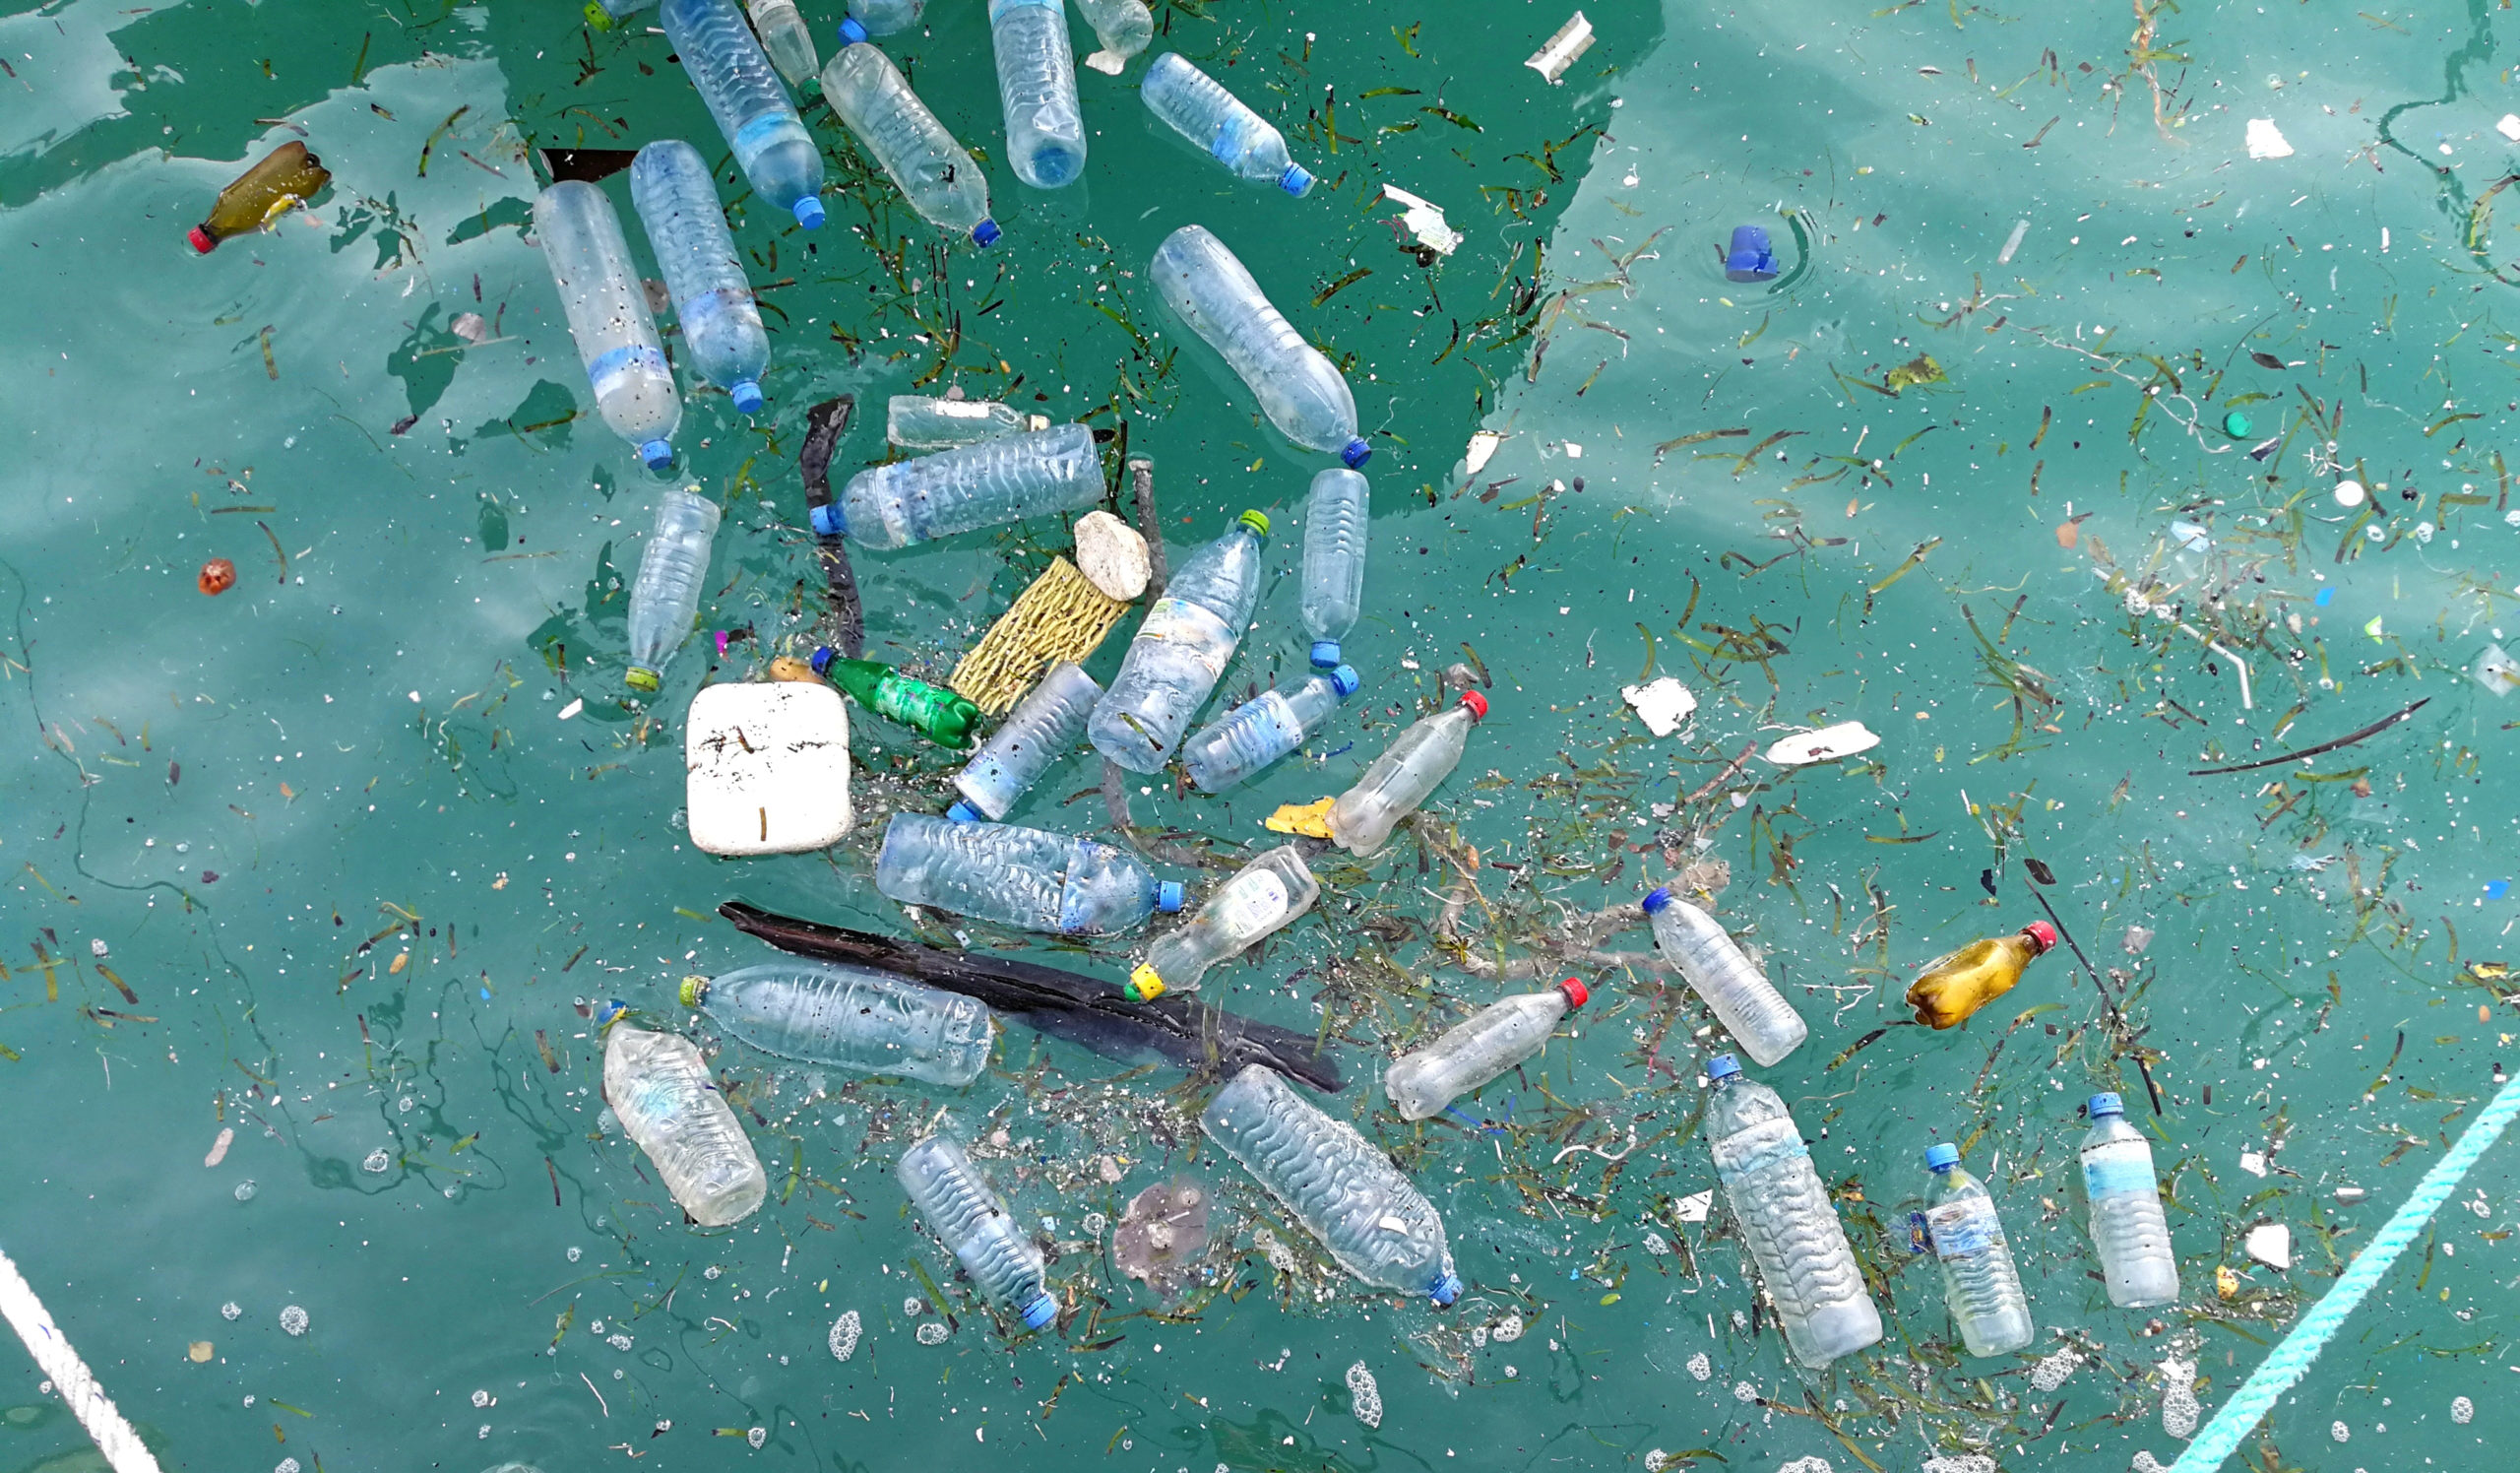 塑料水瓶漂浮在水中